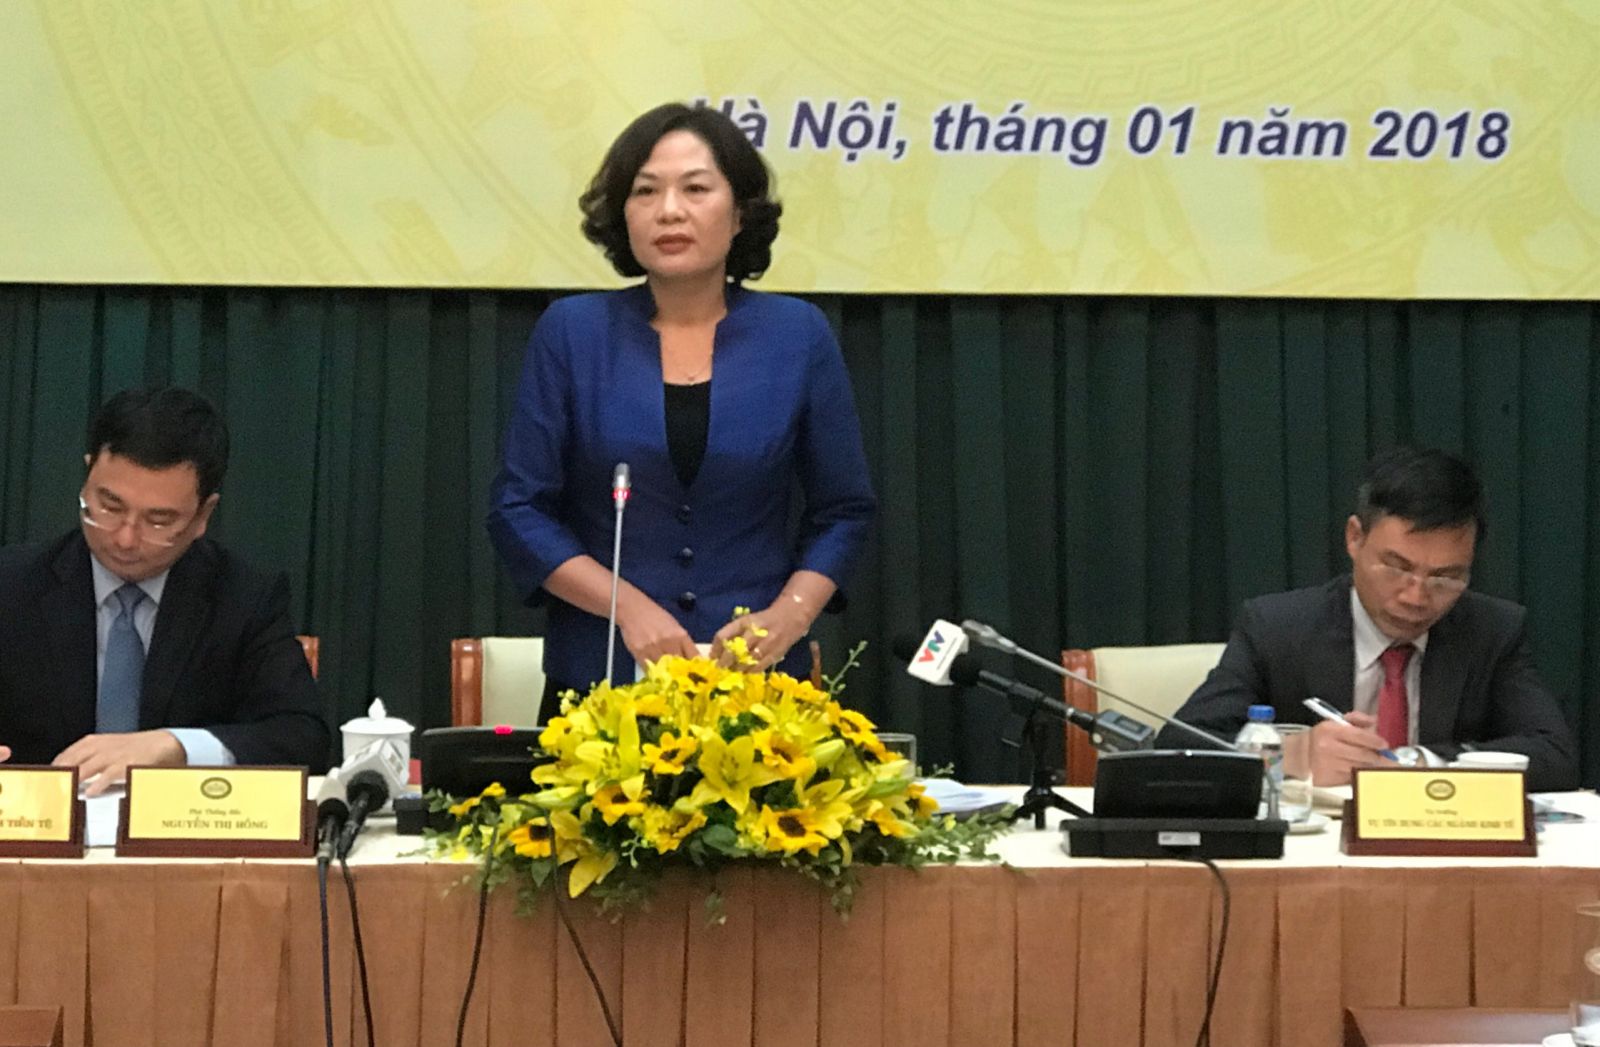 Phó Thống đốc NHNN tại buổi họp báo.Ảnh:VGP/Huy Thắng